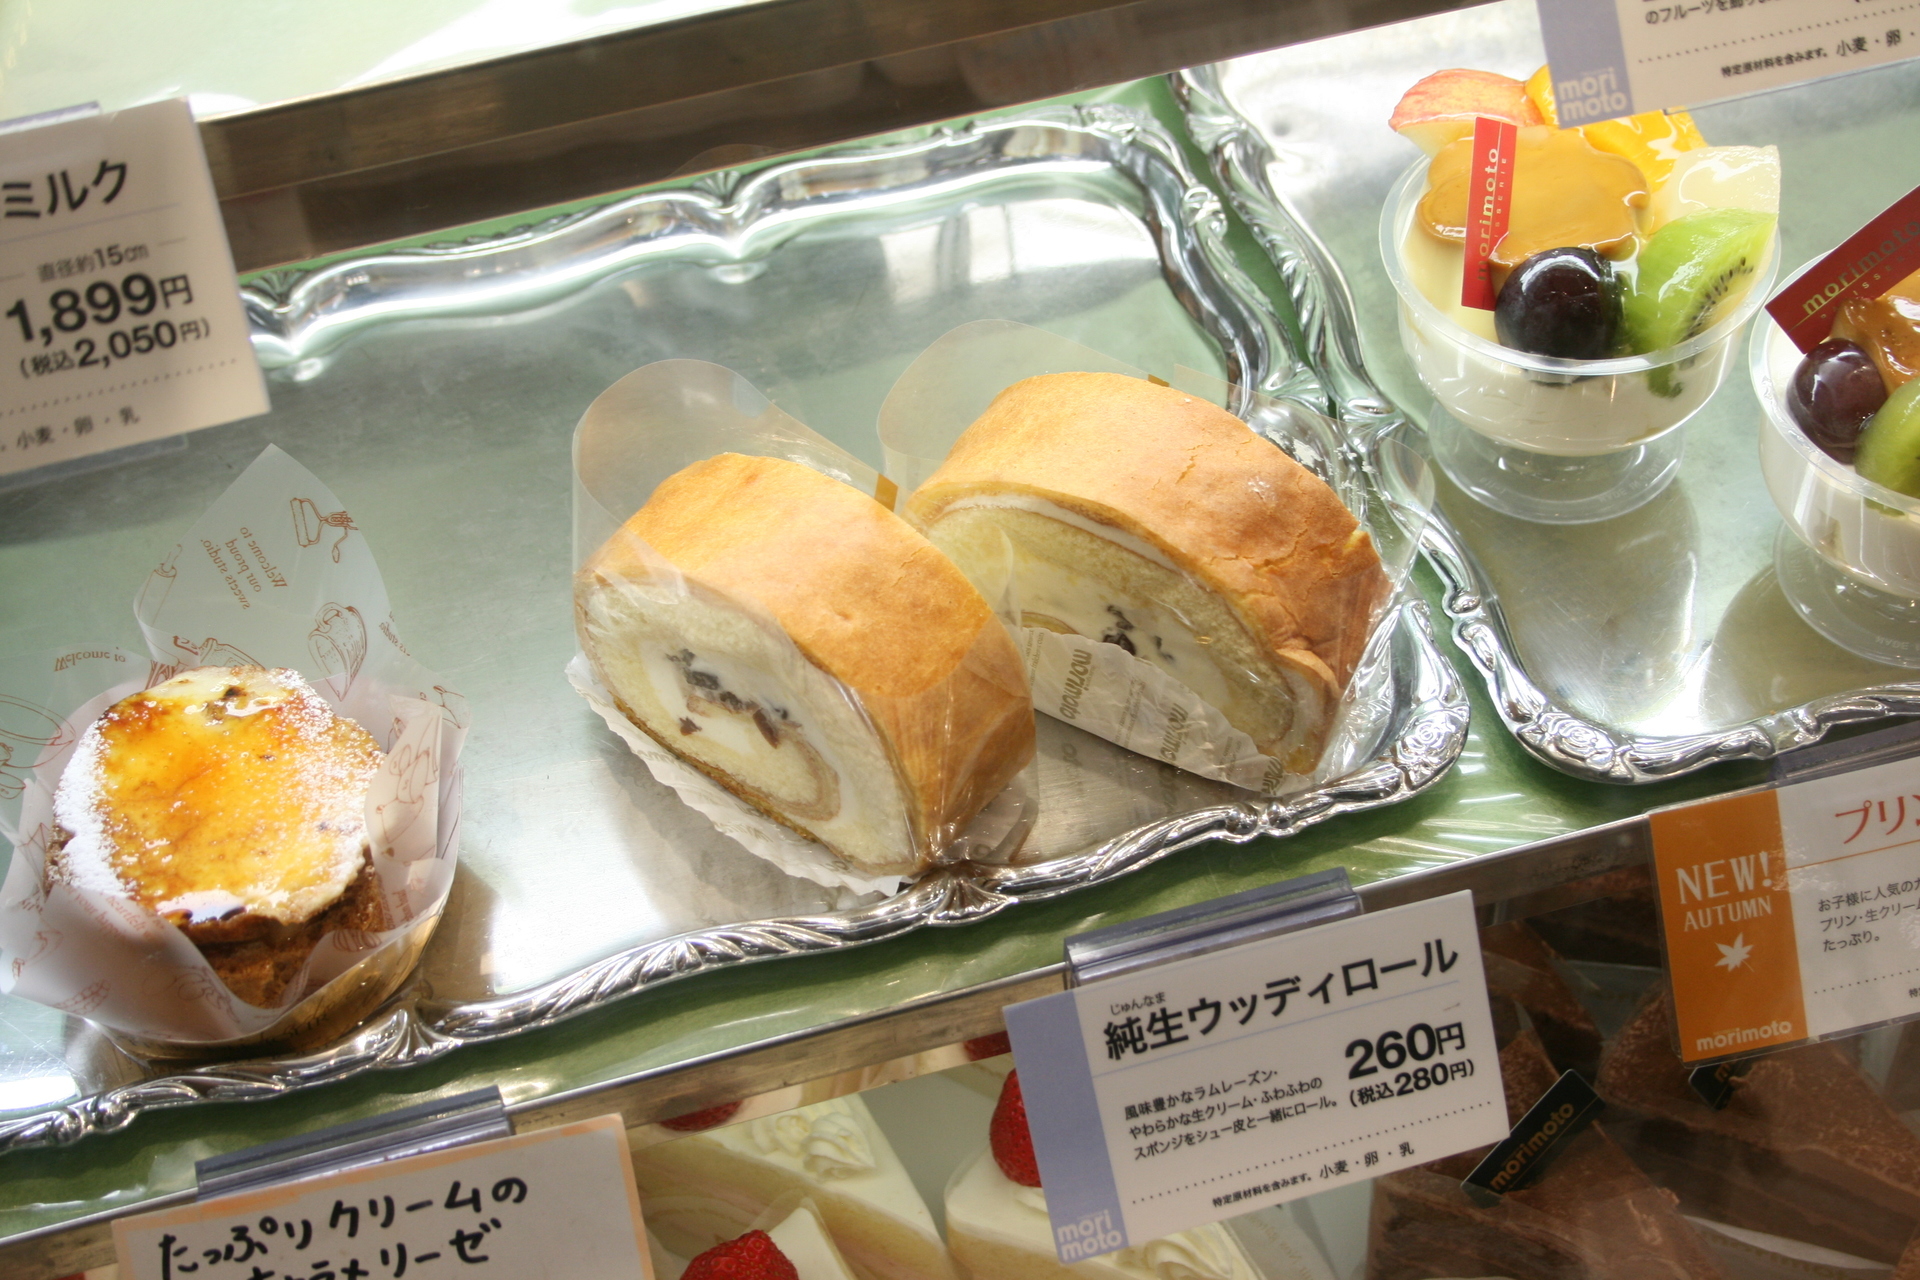 北海道千歳市 ラムレーズンと生クリームのハーモニーを味わえる もりもと Morimoto のロールケーキ 純生ウッディロール